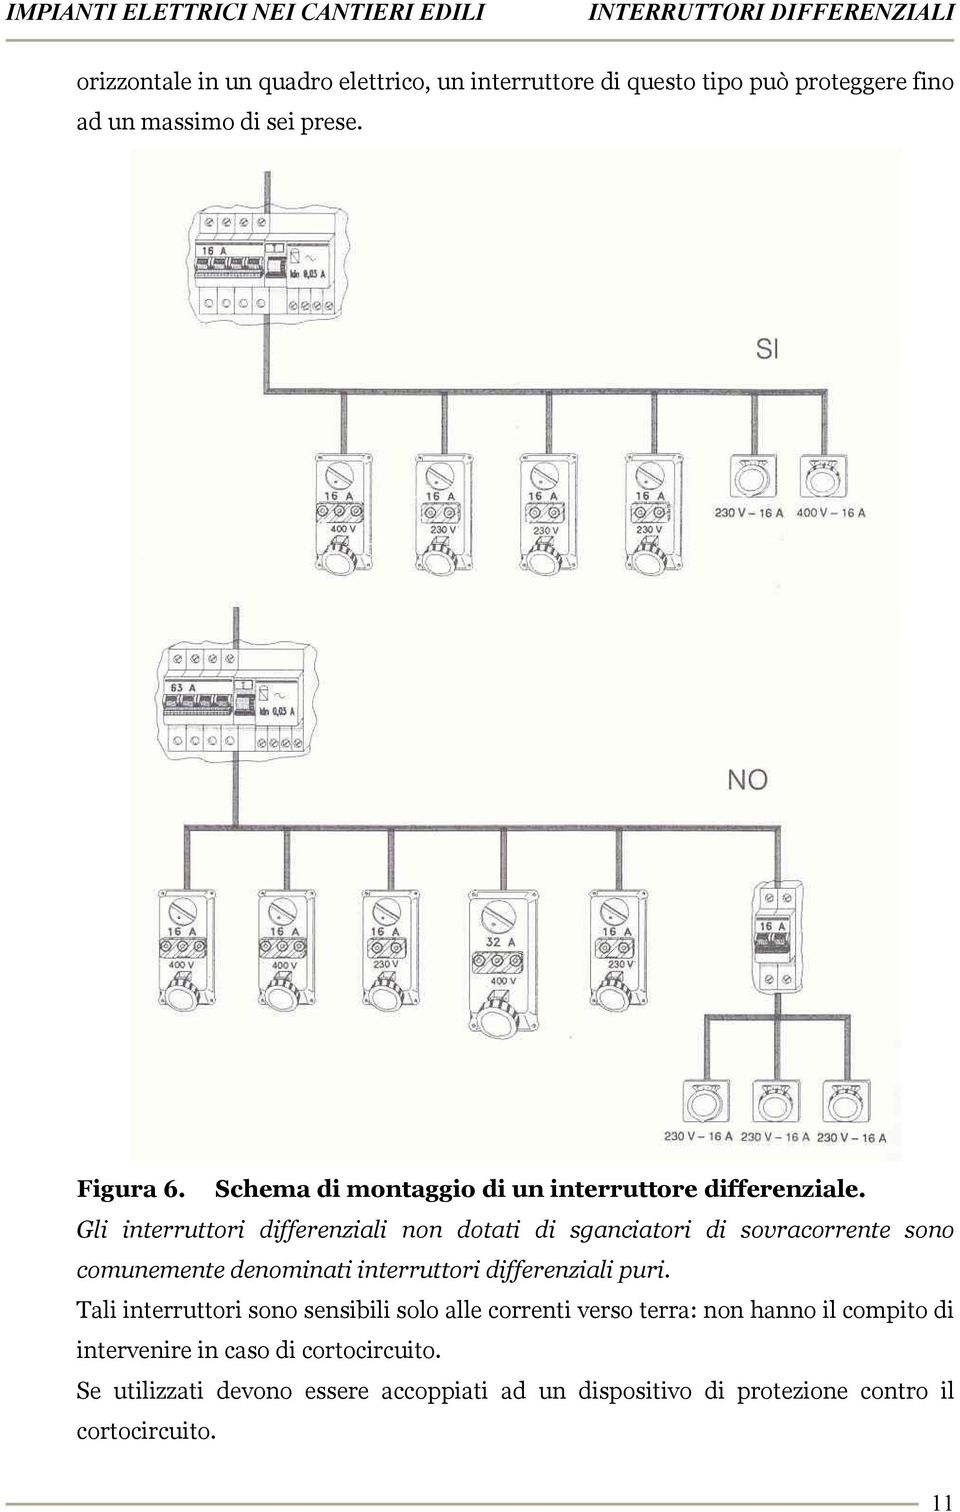 Gli interruttori differenziali non dotati di sganciatori di sovracorrente sono comunemente denominati interruttori differenziali puri.